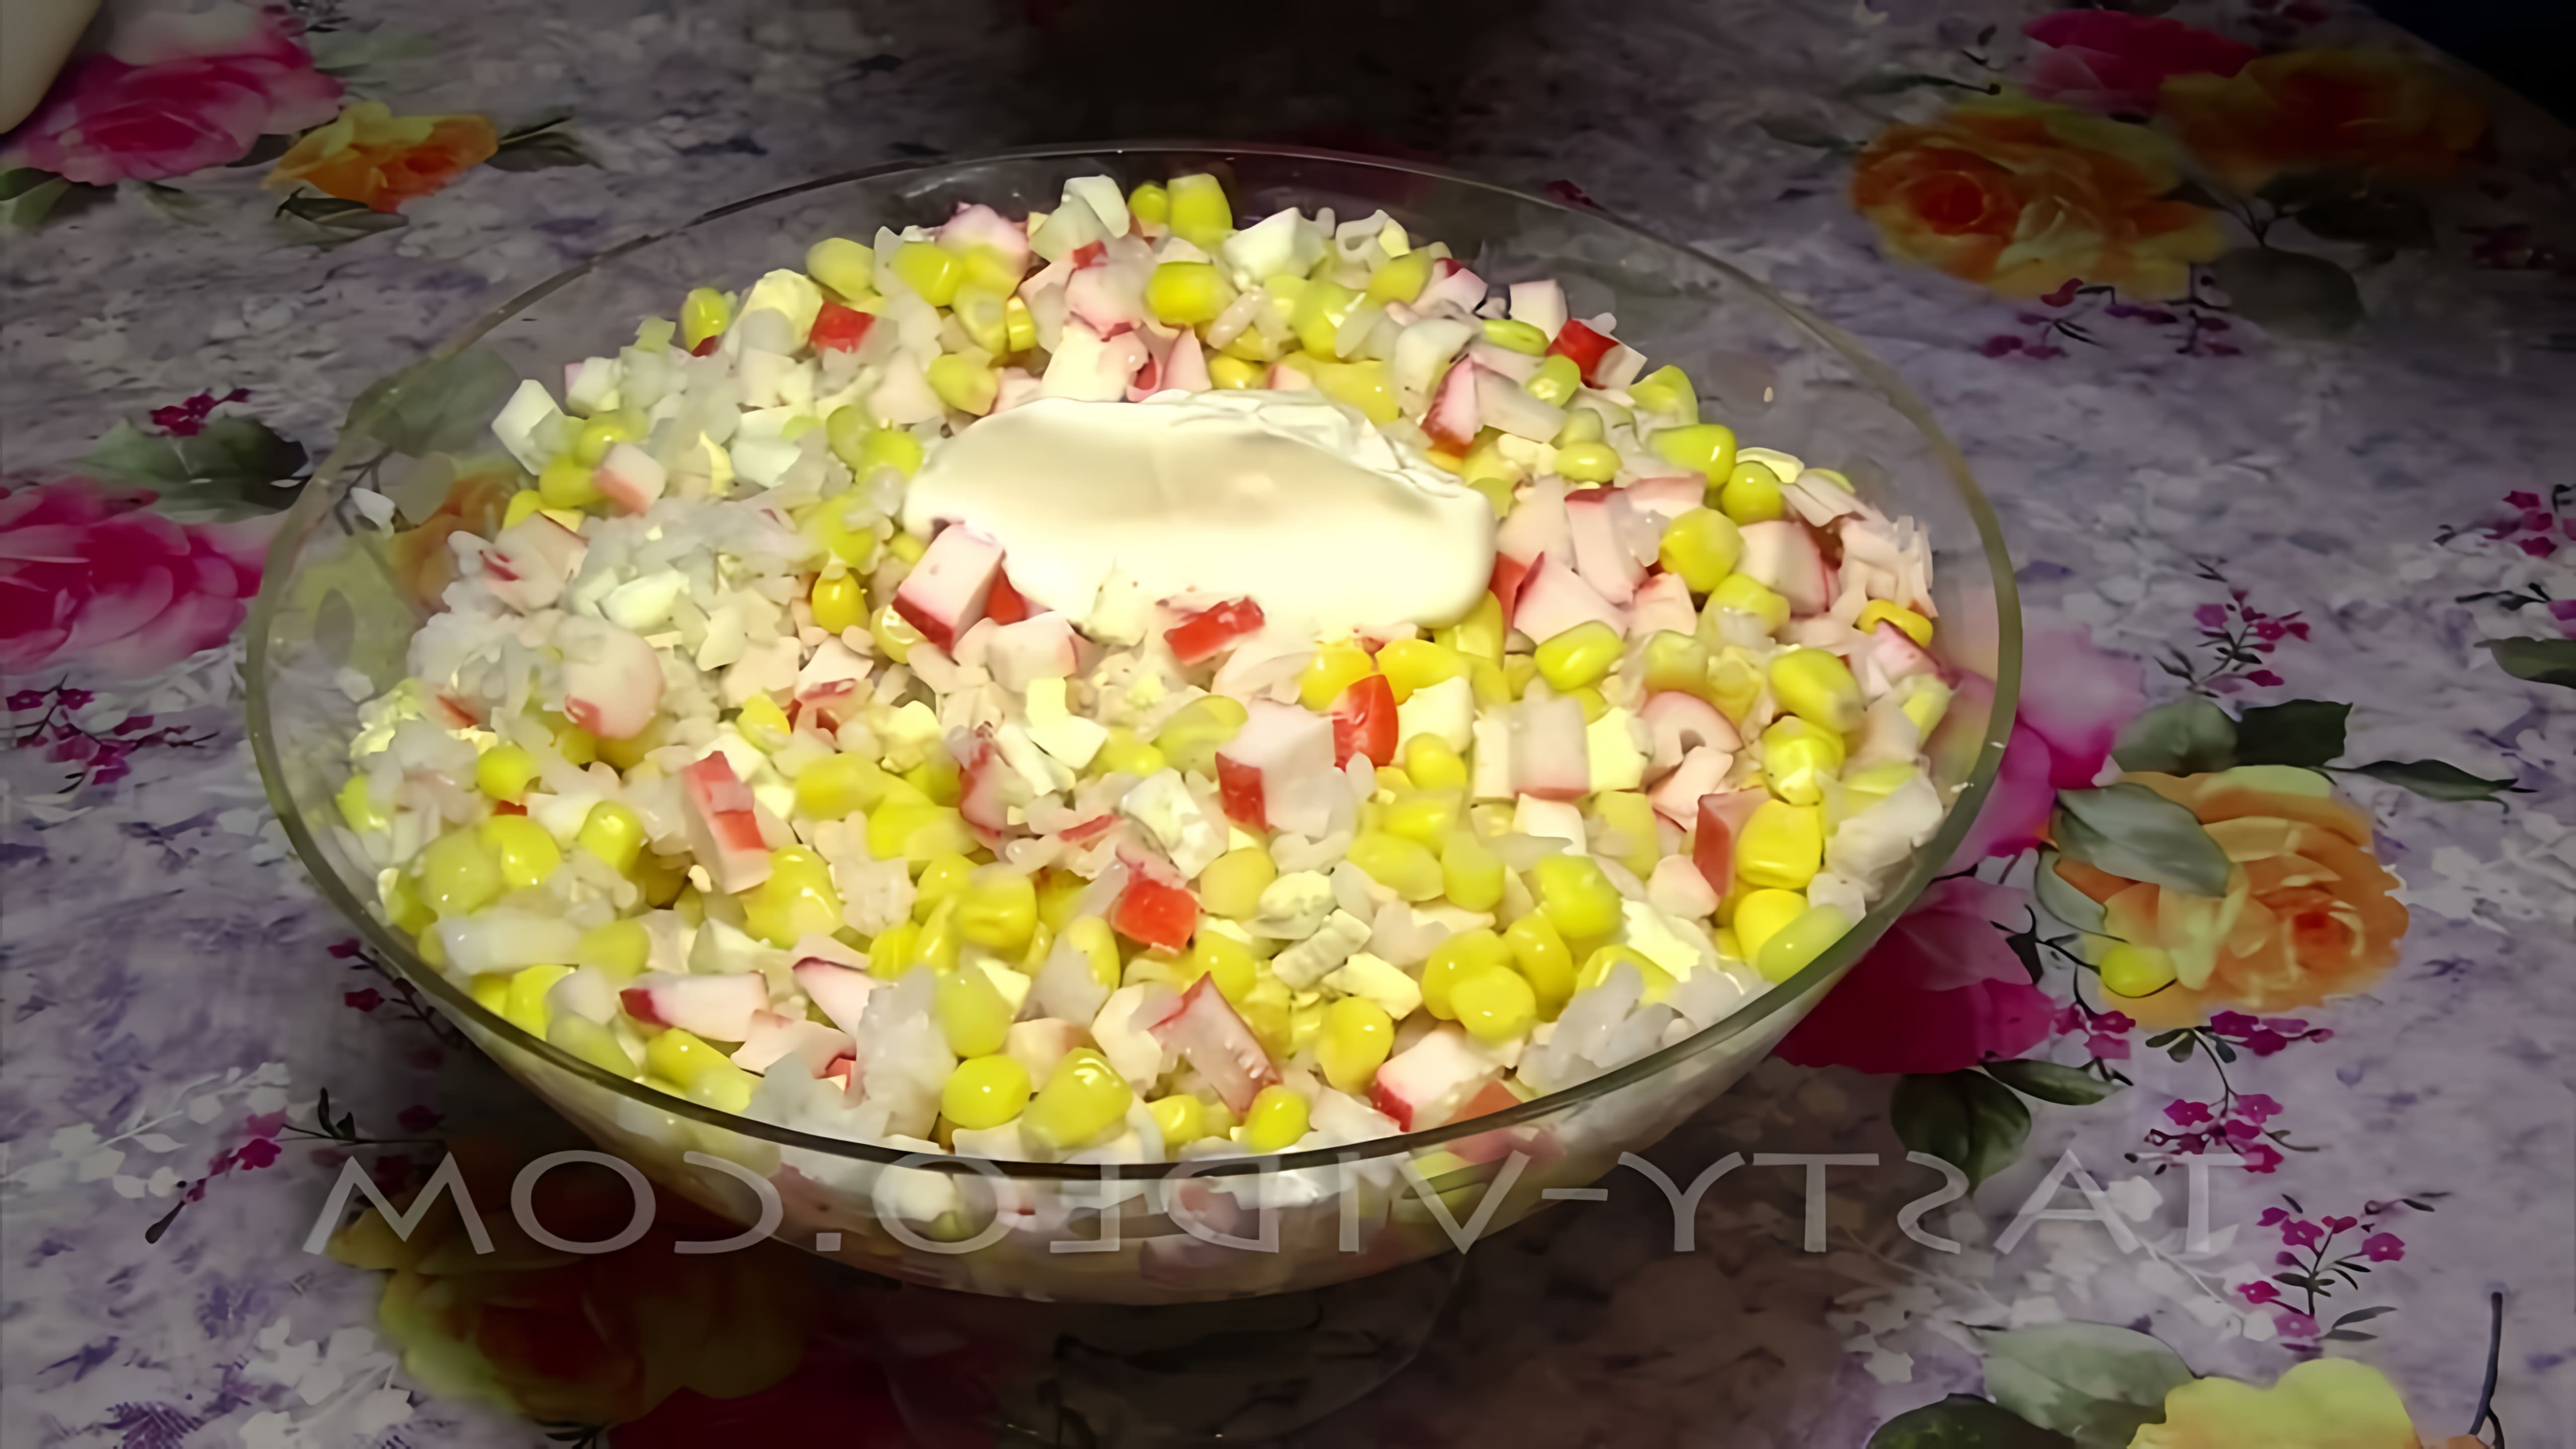 В этом видео демонстрируется рецепт крабового салата